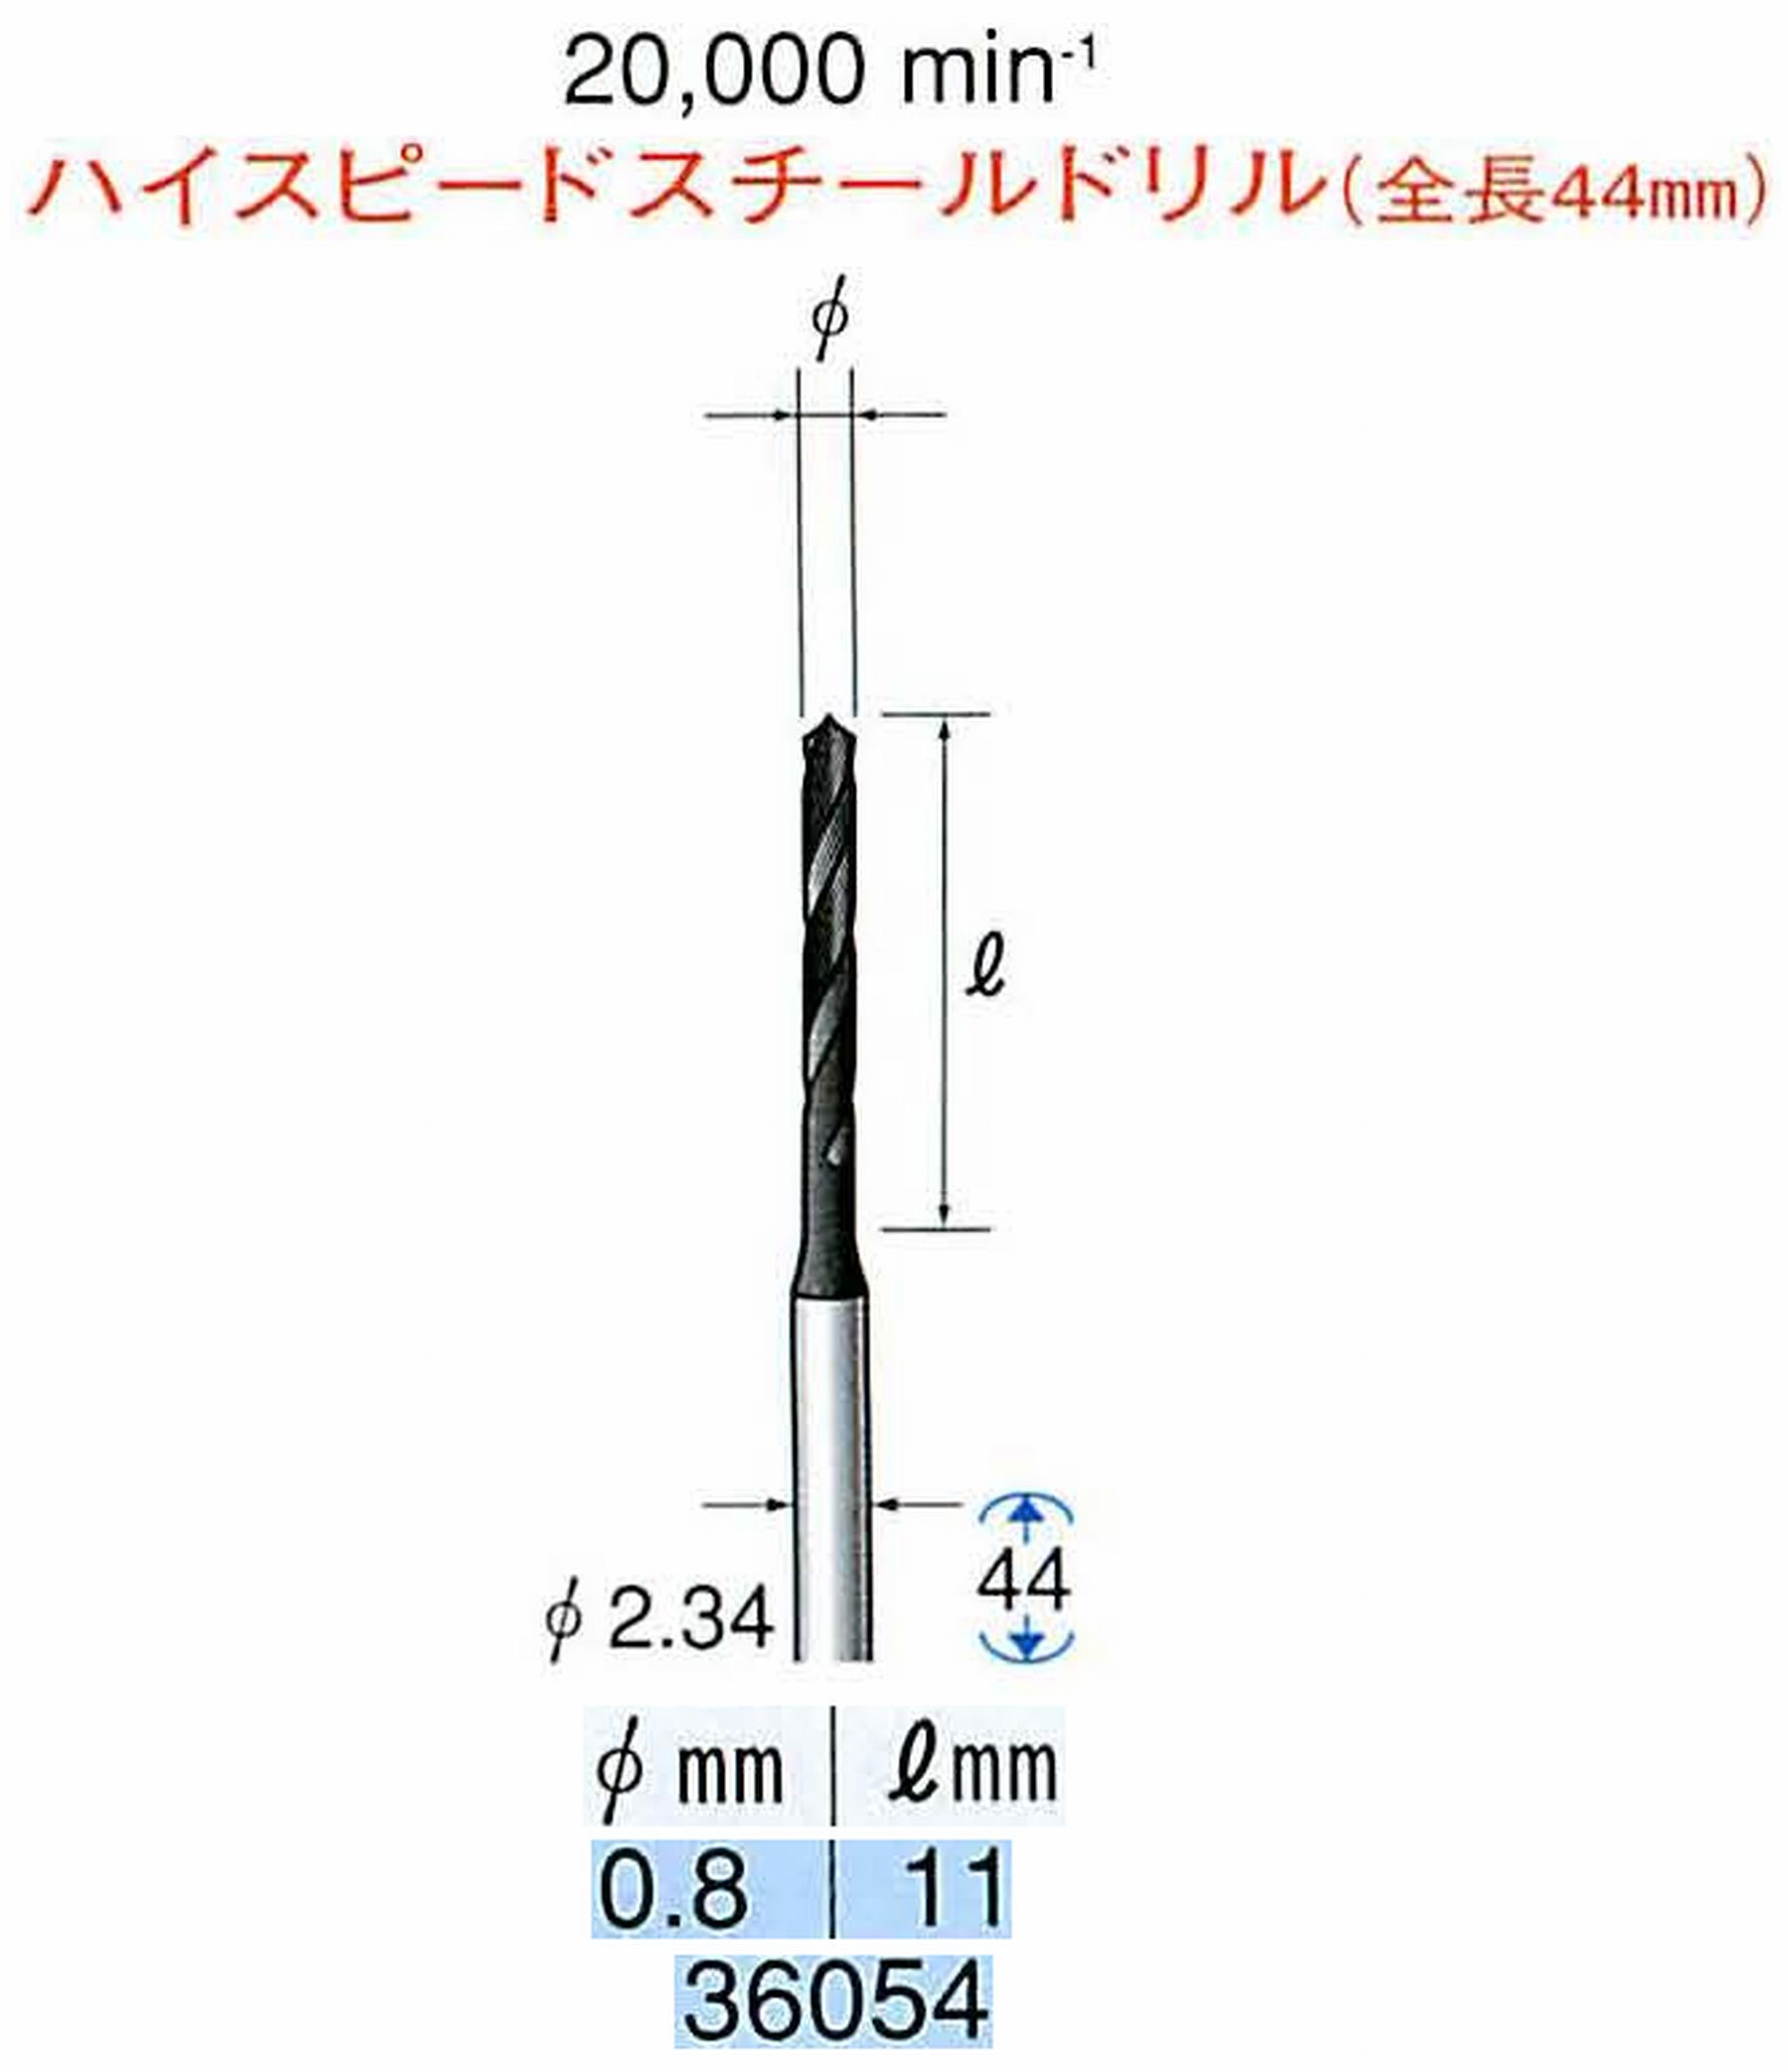 ナカニシ/NAKANISHI ツイストドリル ハイスピードスチール(H.S.S)ドリル(全長44mm) 軸径(シャンク) φ2.34mm 36054